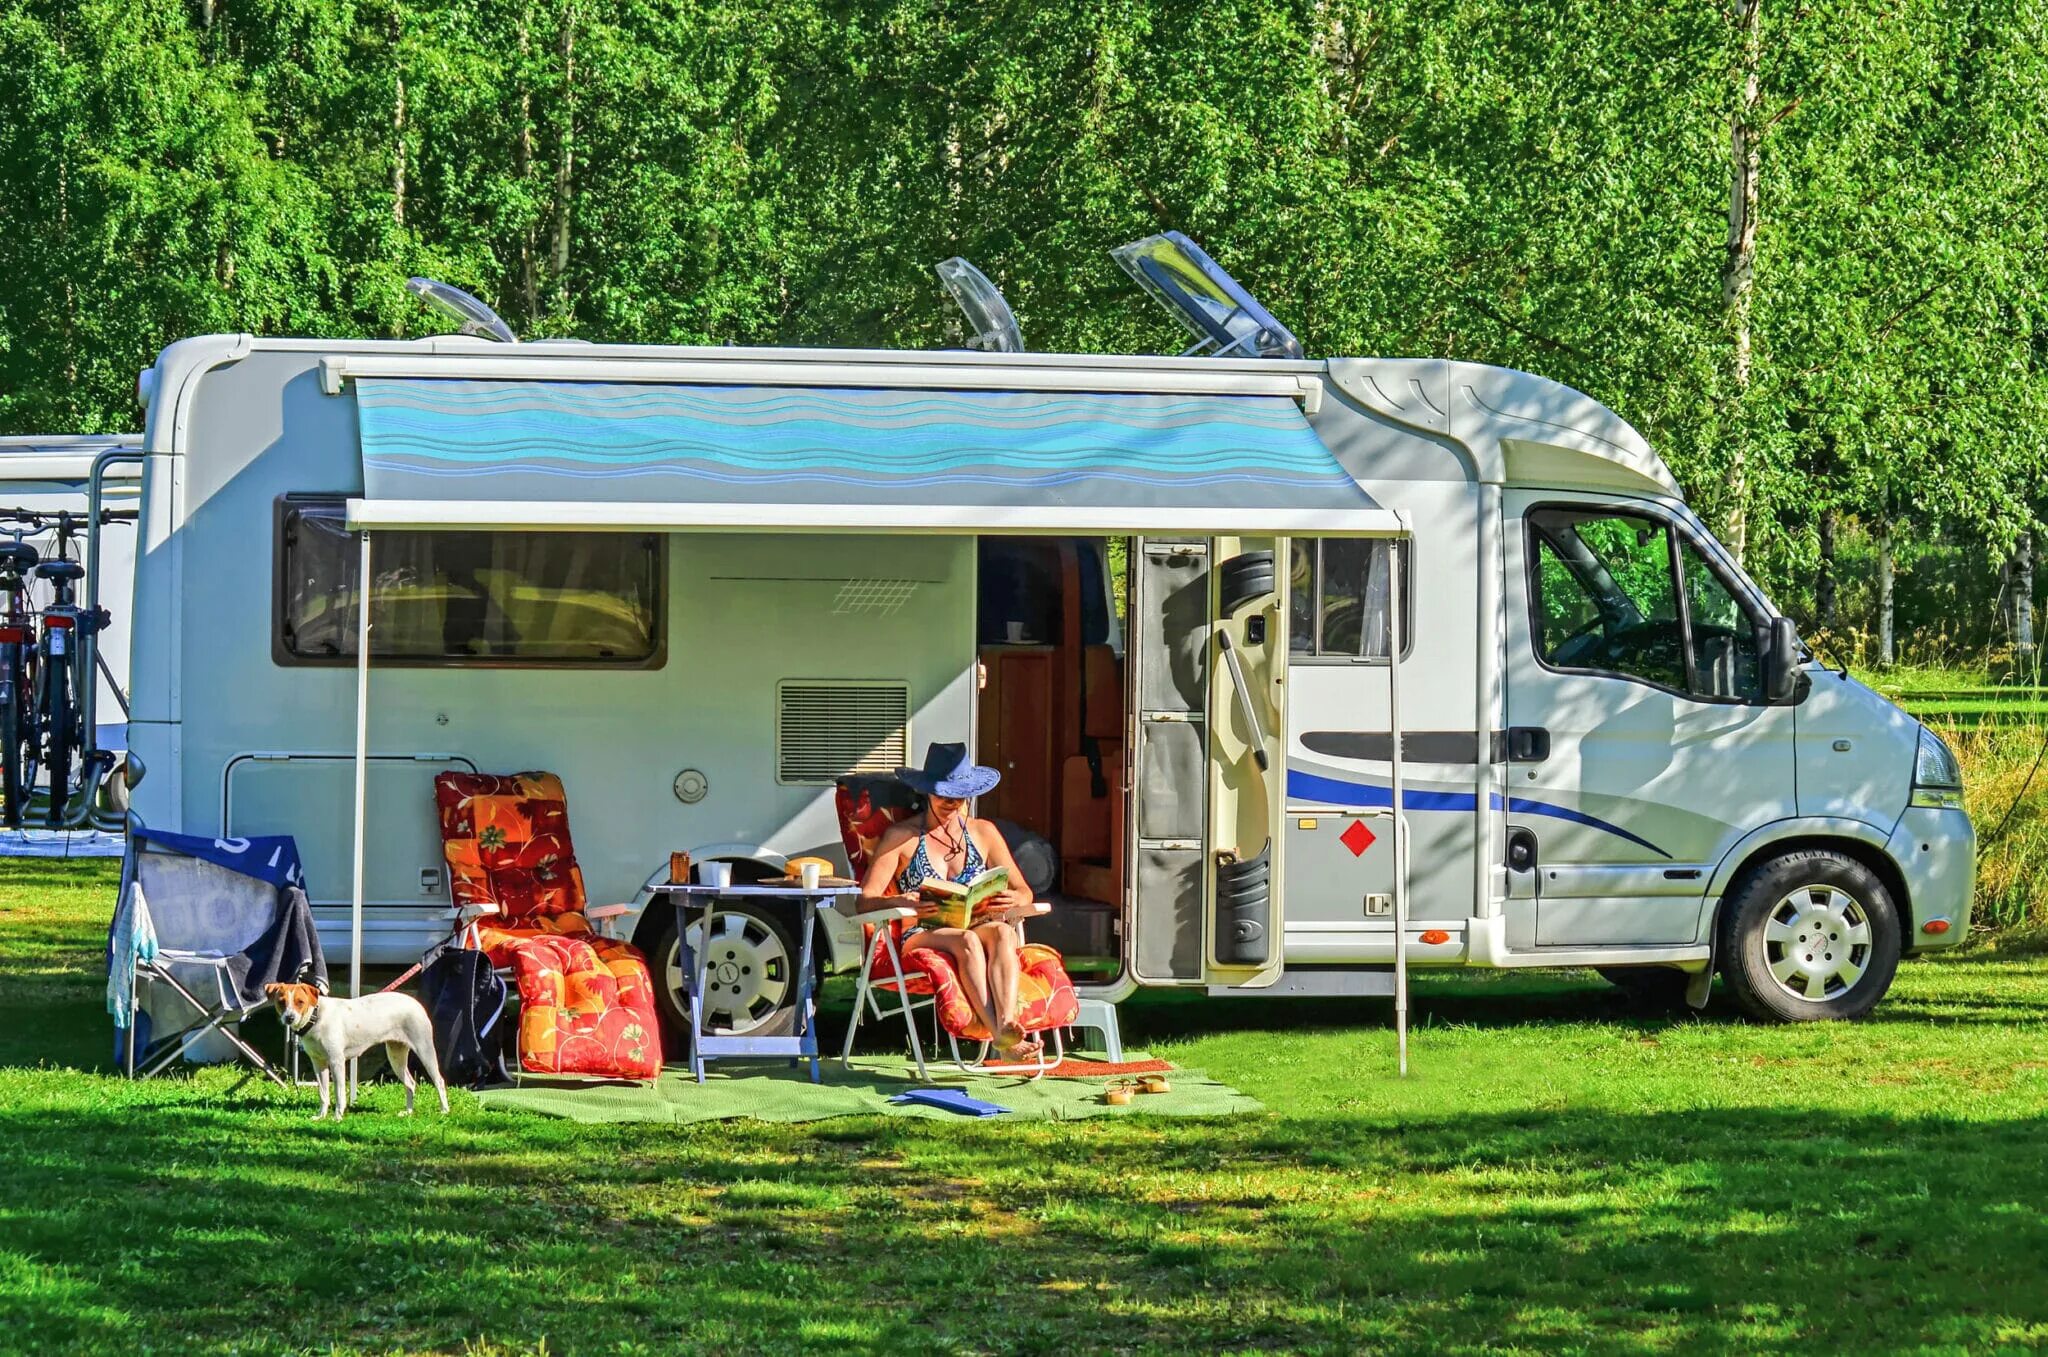 Camping home. Caravan. Recreational vehicle кемпинг. Кемпинг автодом. W.Caravan автодом.